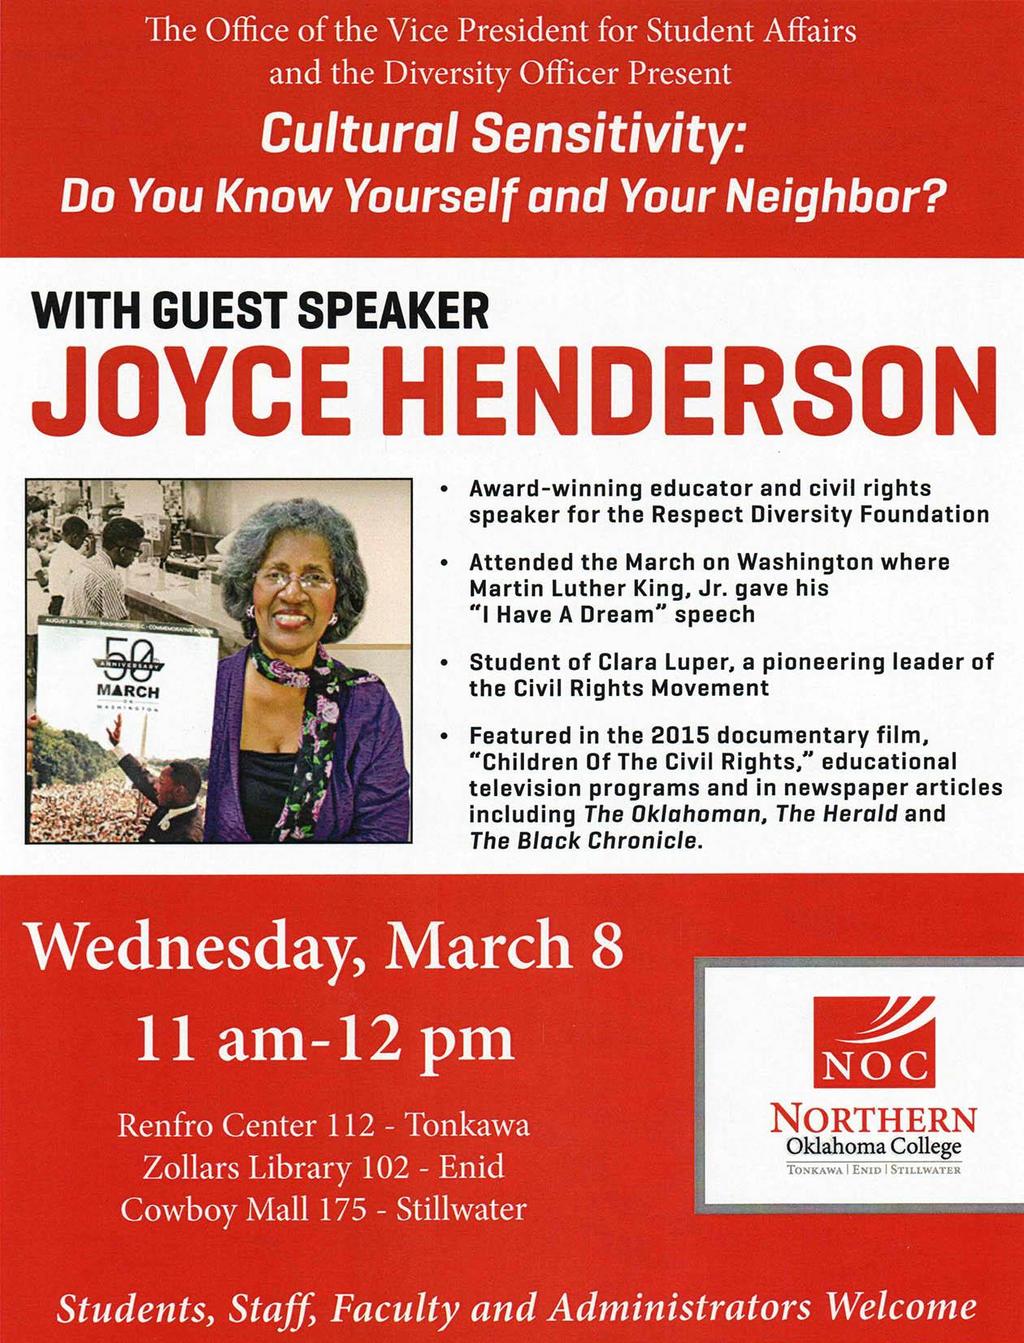 Guest Speaker Joyce